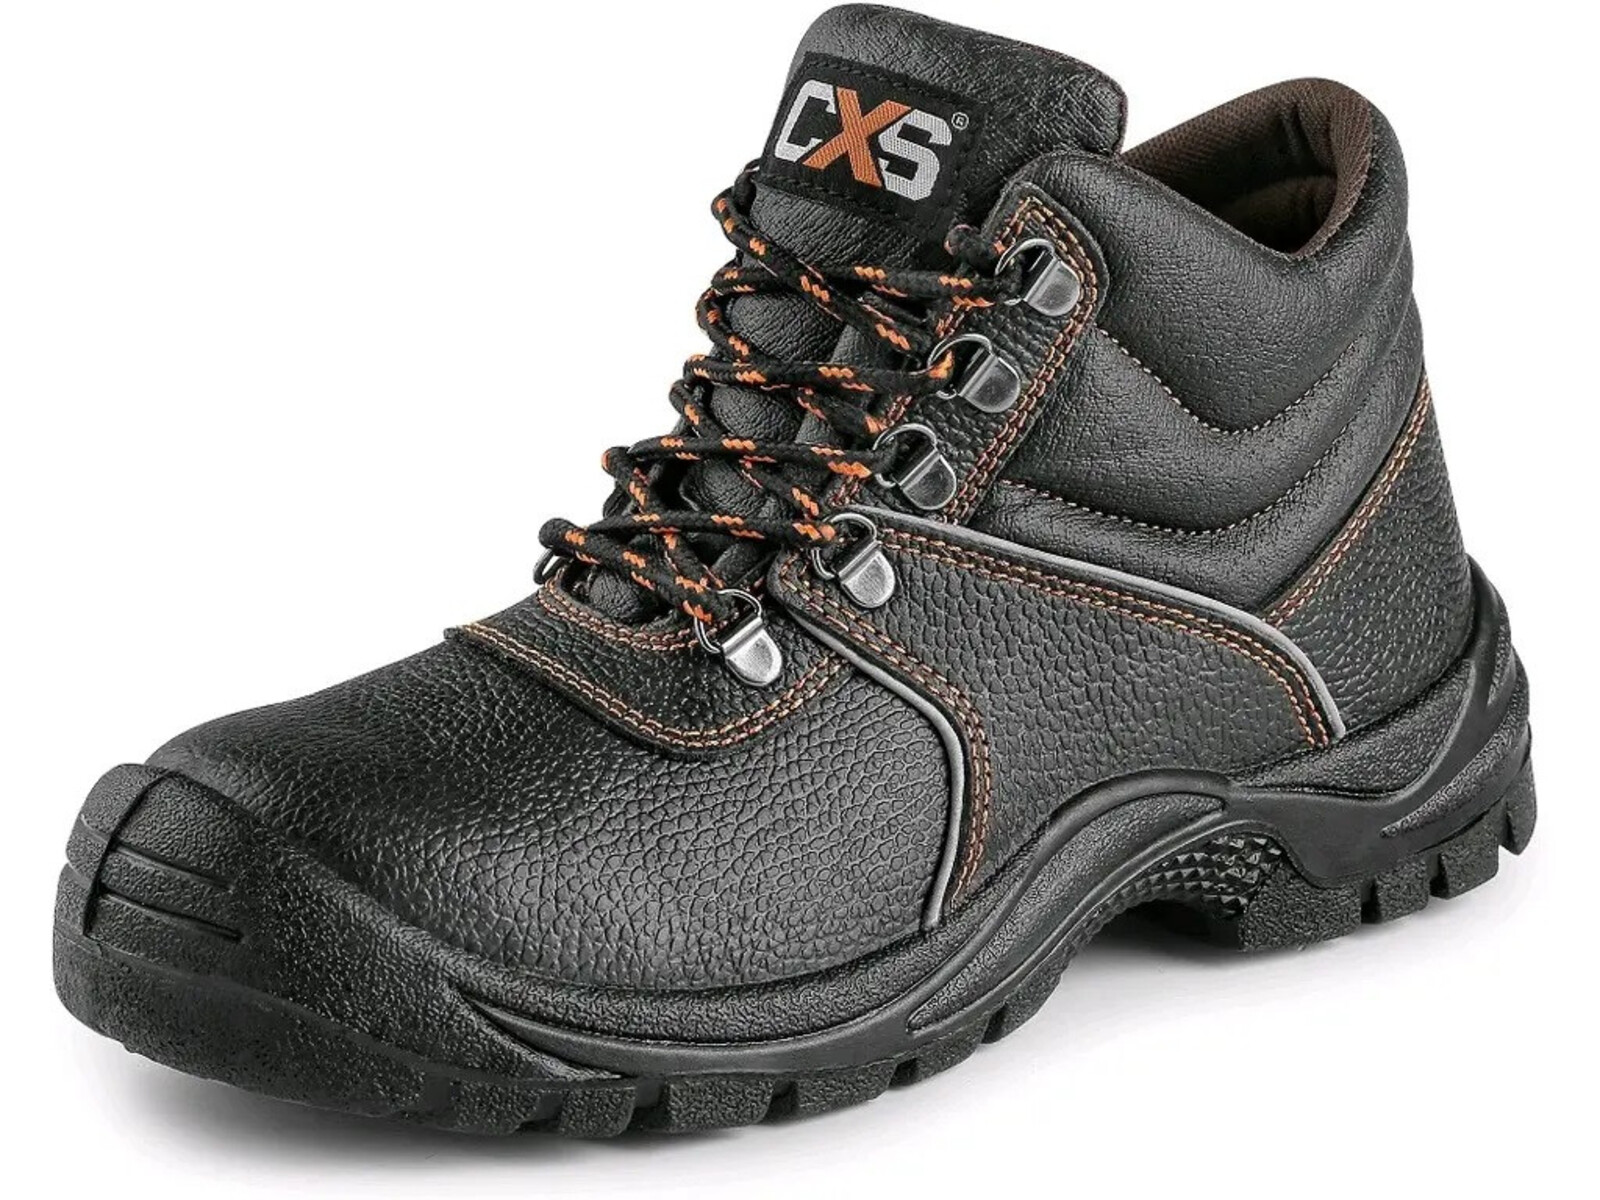 Bezpečnostná členková obuv CXS Stone Marble S3 SRC - veľkosť: 39, farba: čierna/oranžová